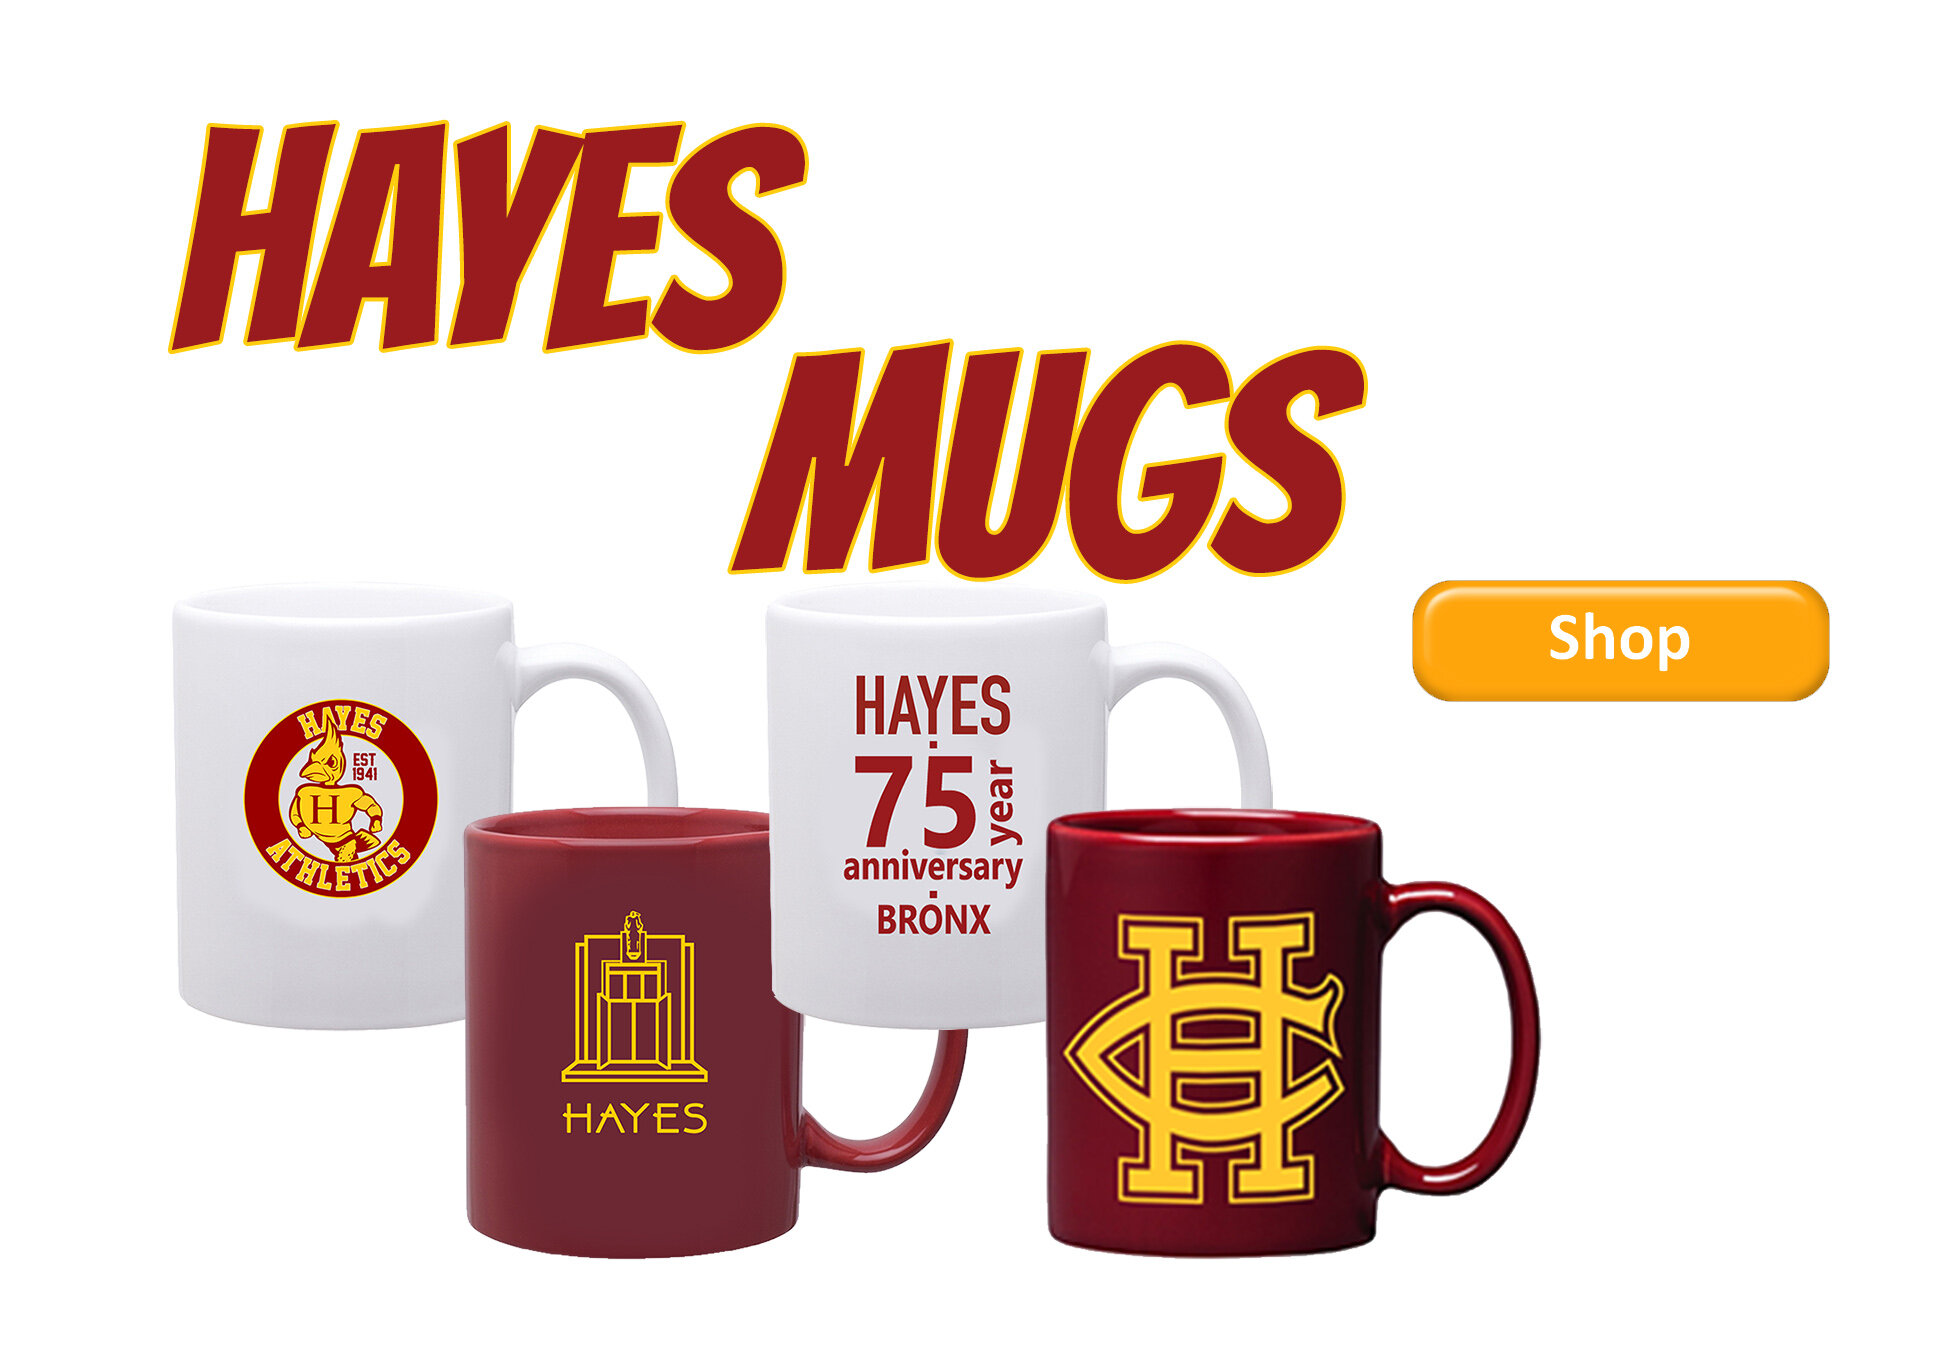 Hayes mugs slide.jpg